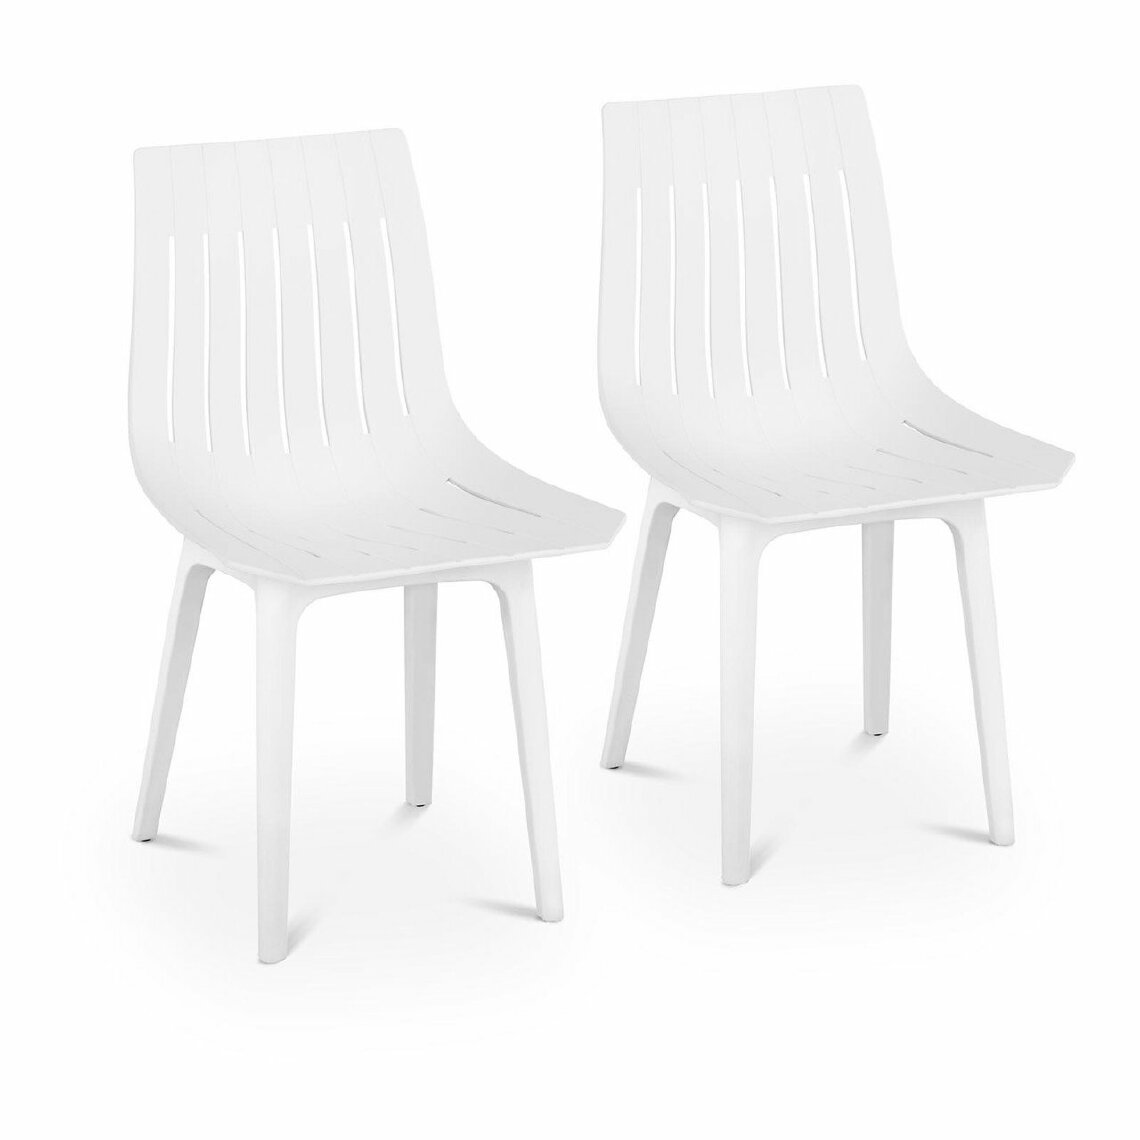 Helloshop26 - Lot de 2 chaises salon salle à manger 150 kg max surface d'assise de 47 x 42 cm coloris blanc 14_0000875 - Chaises